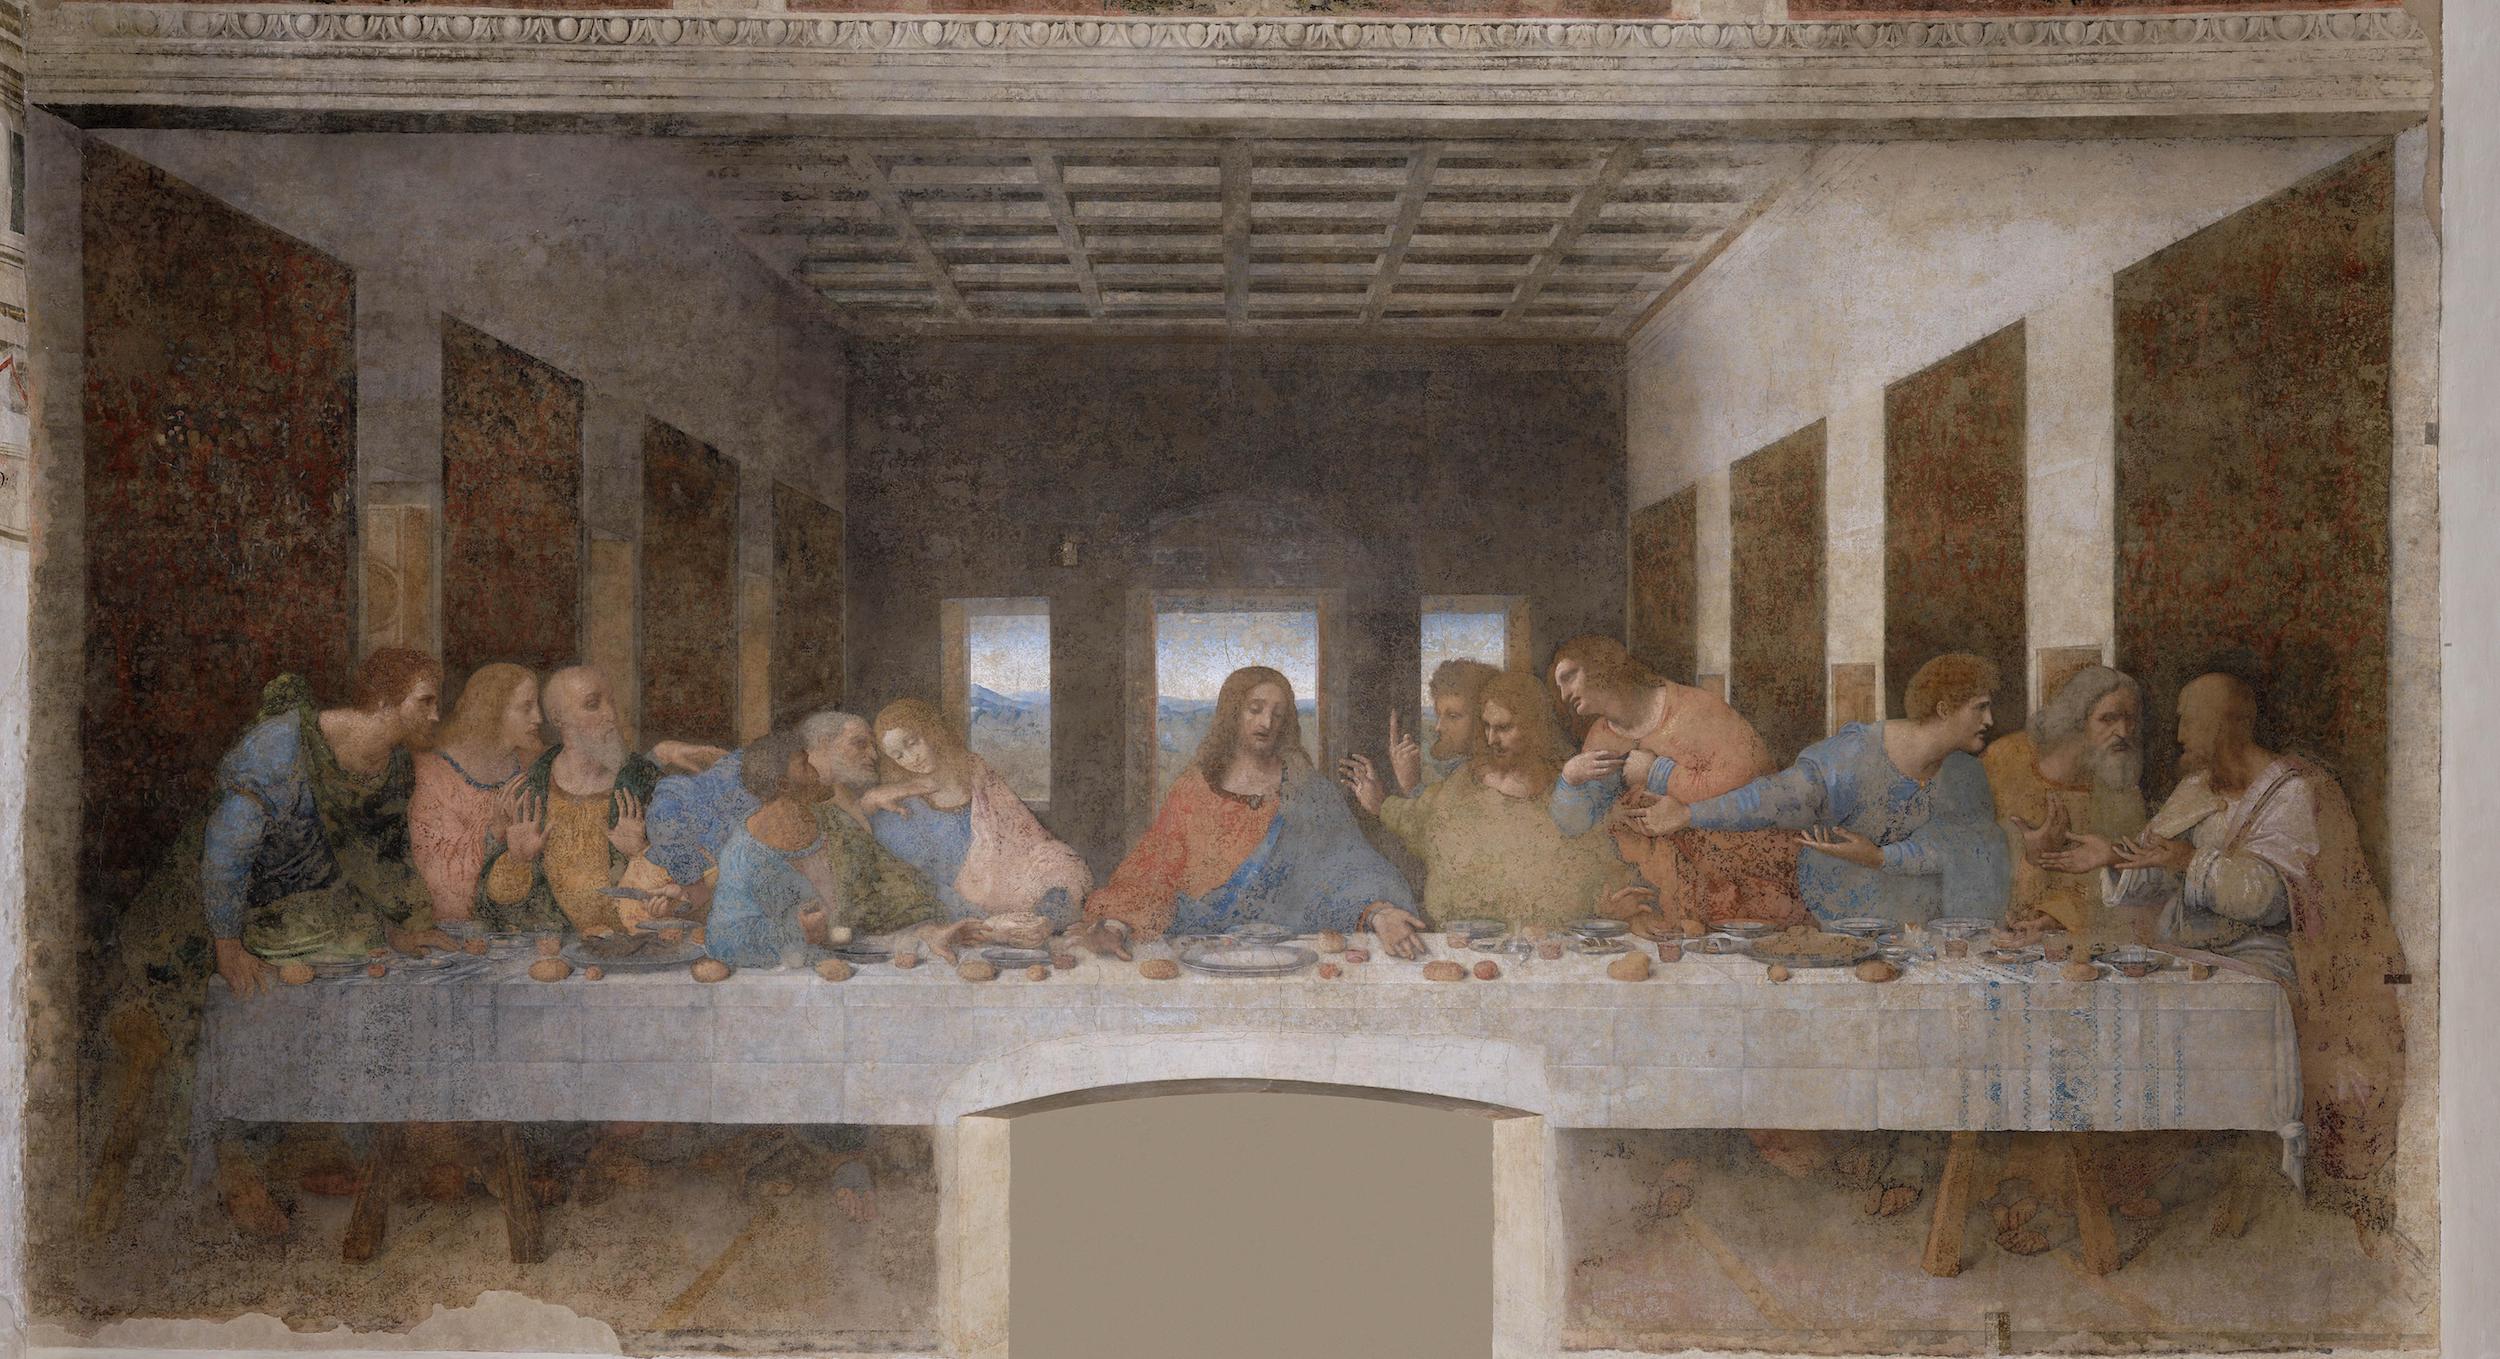 A Última Ceia by Leonardo da Vinci - 1495-1498 - 460 x 880 cm 